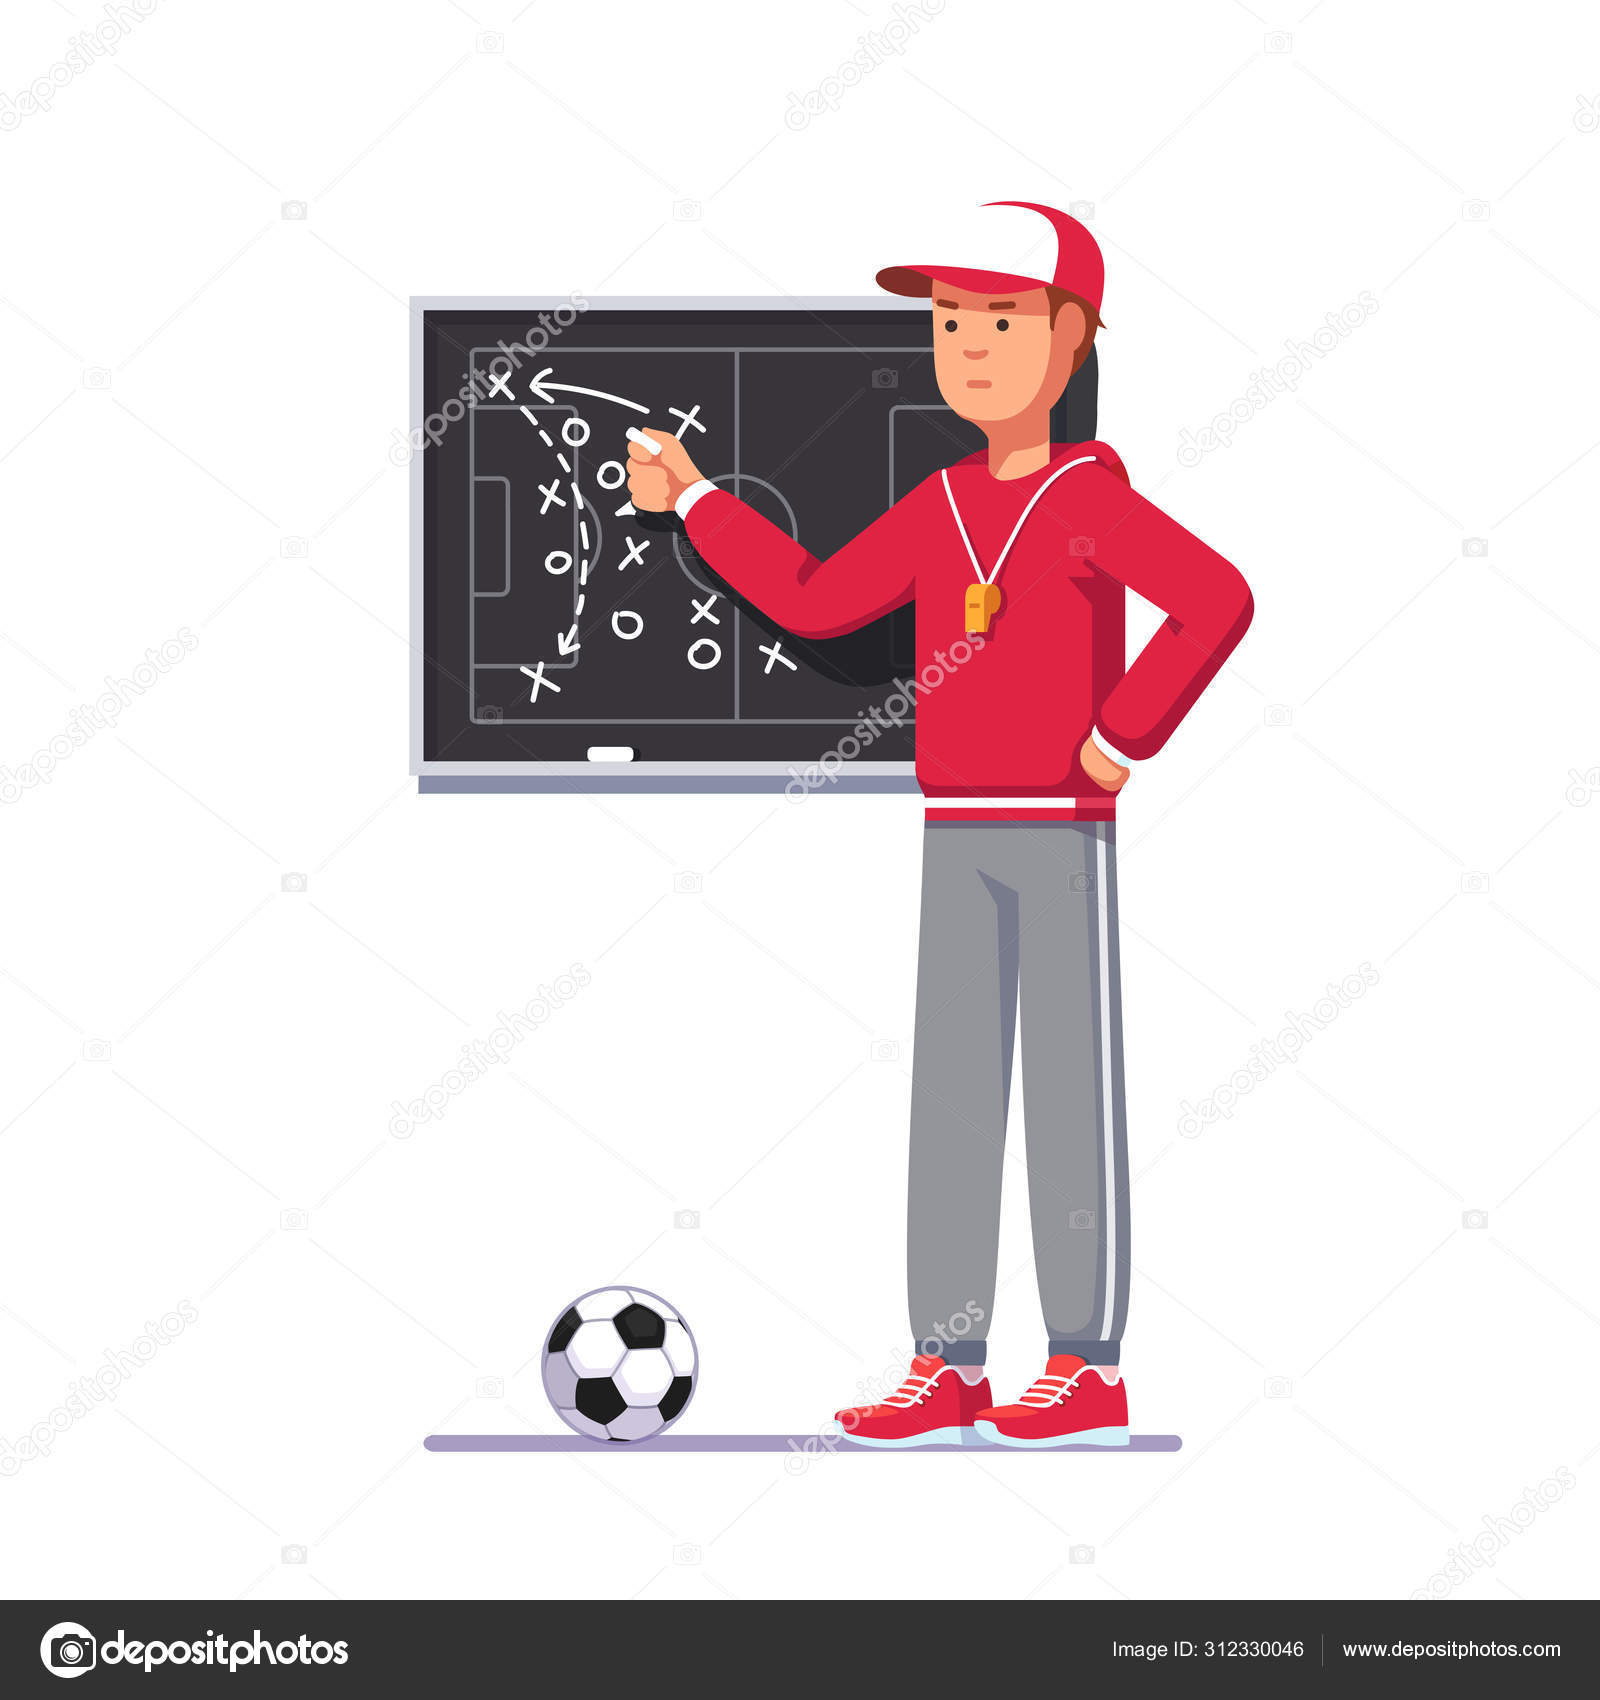 Football Team, análisis del juego de fútbol online